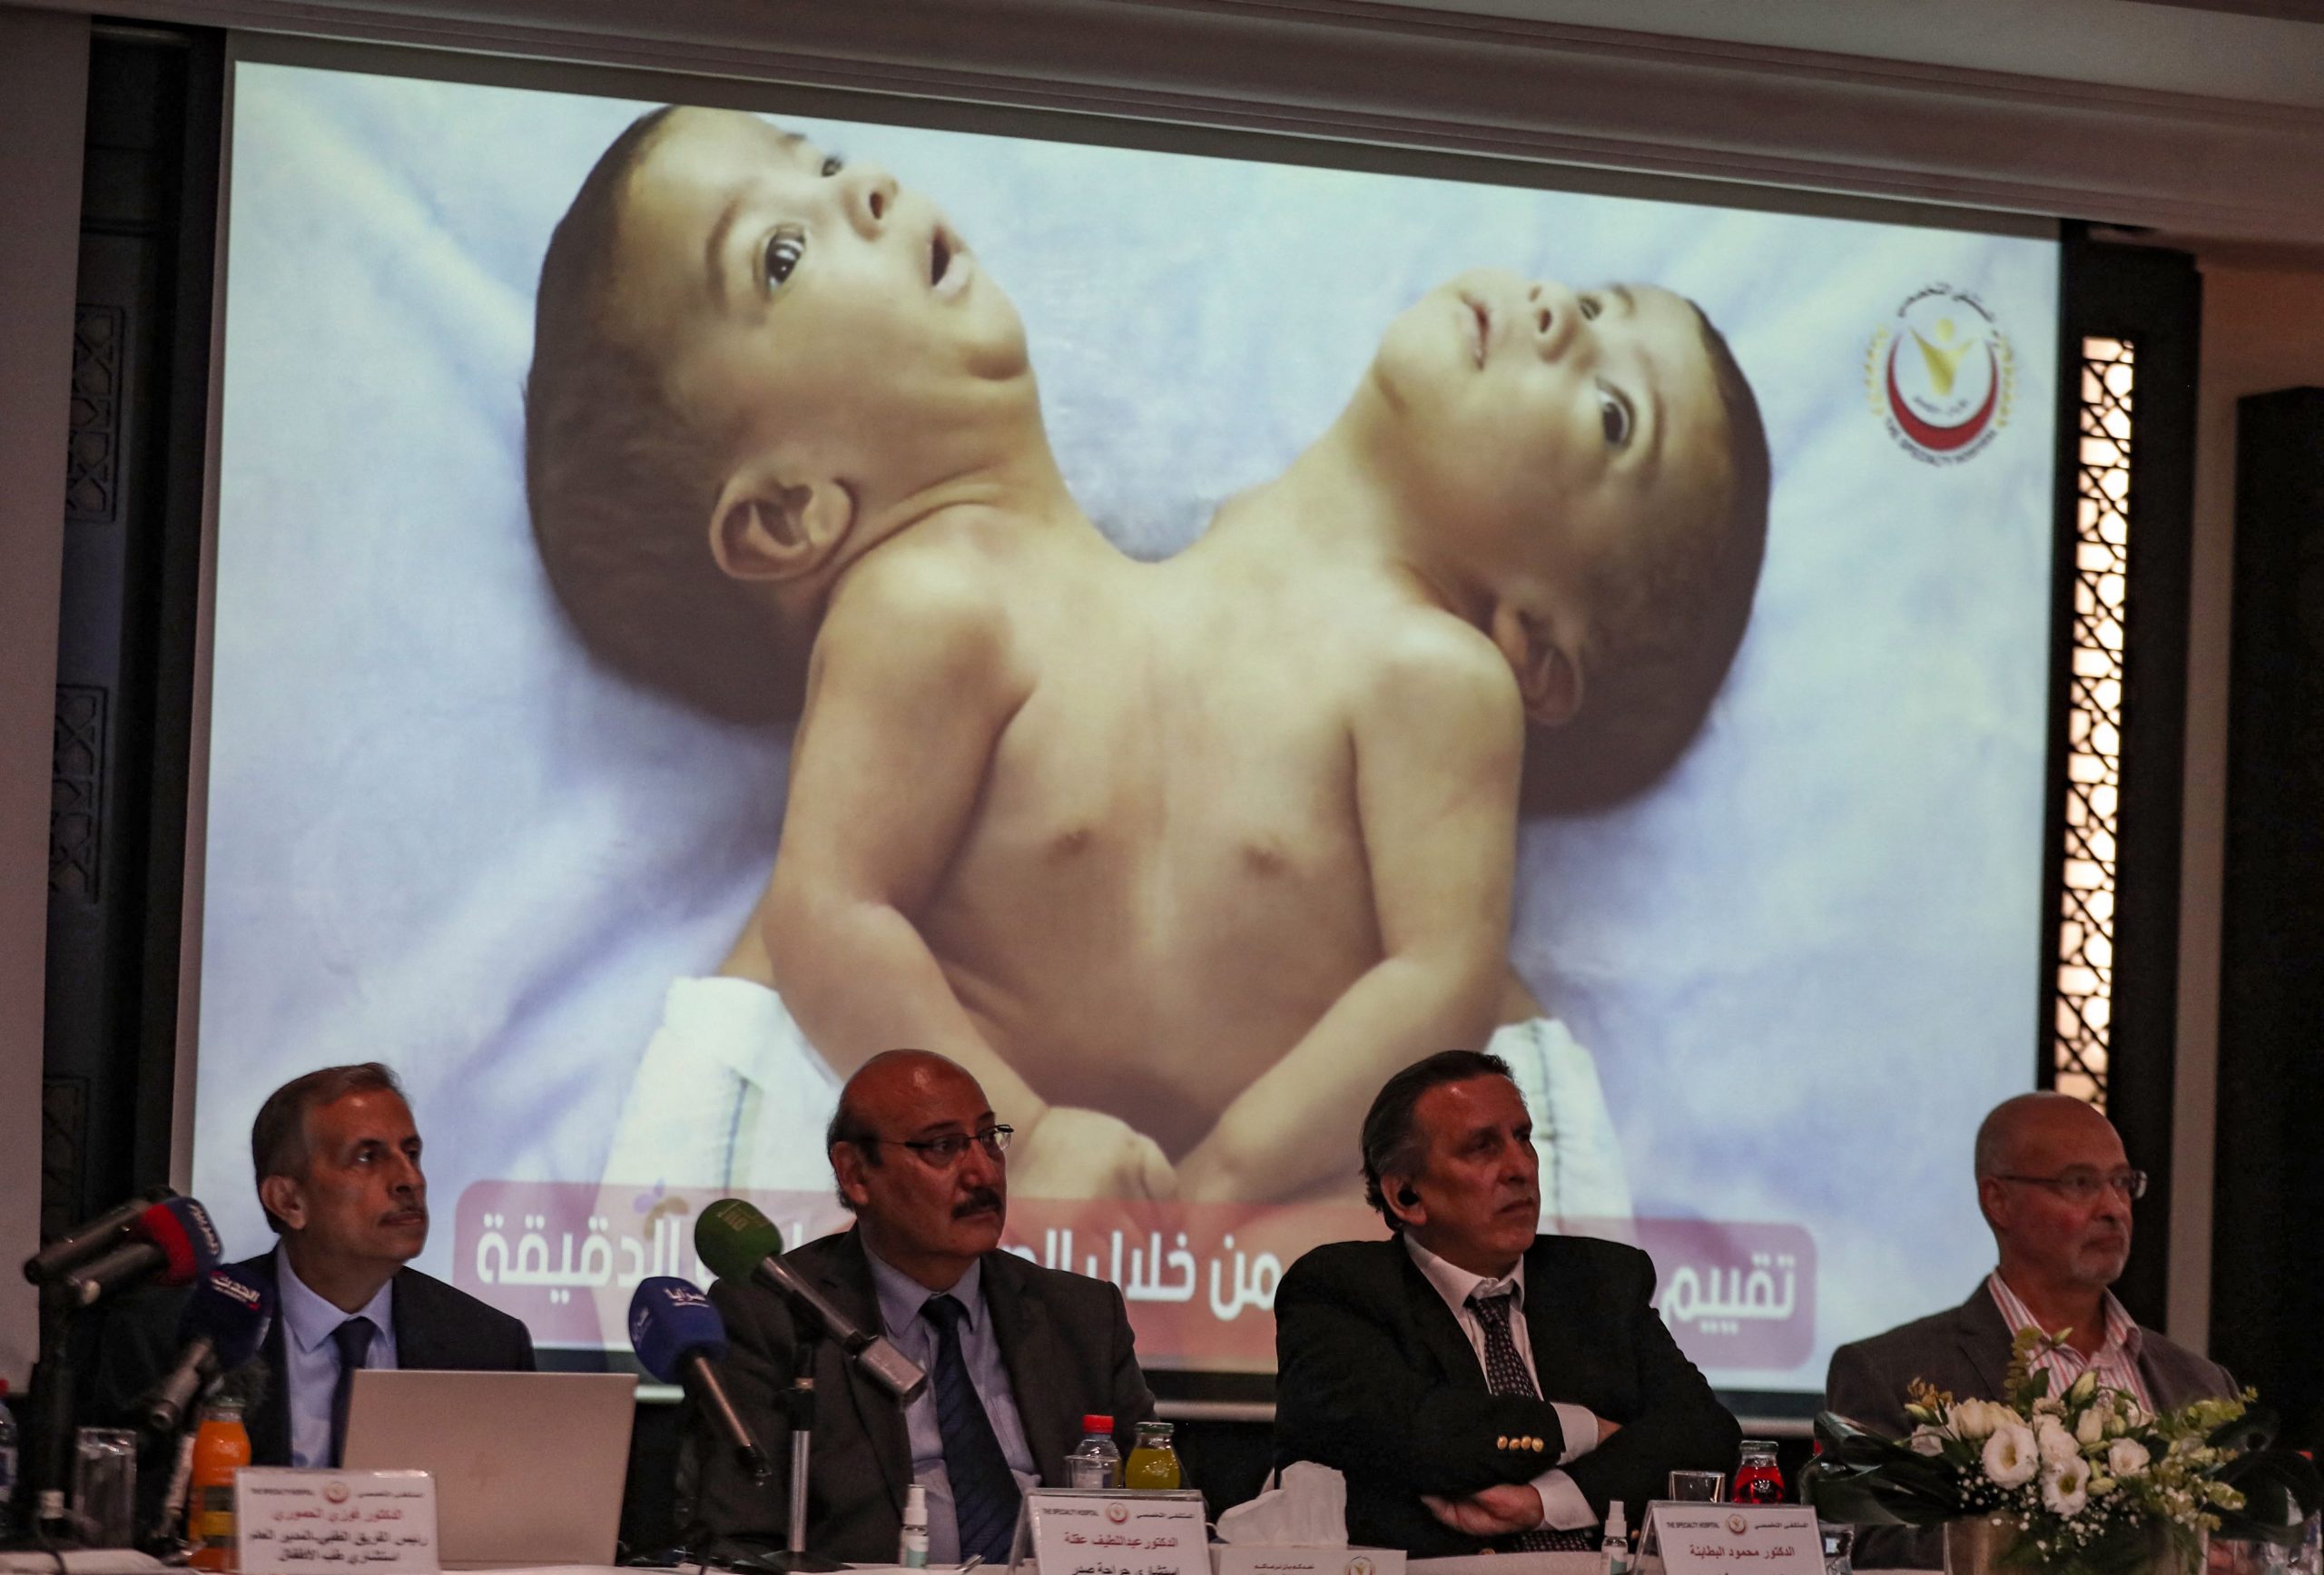 拼盘2图   也门连体婴赴约旦做手术 成功分离“可像一般儿童生活”